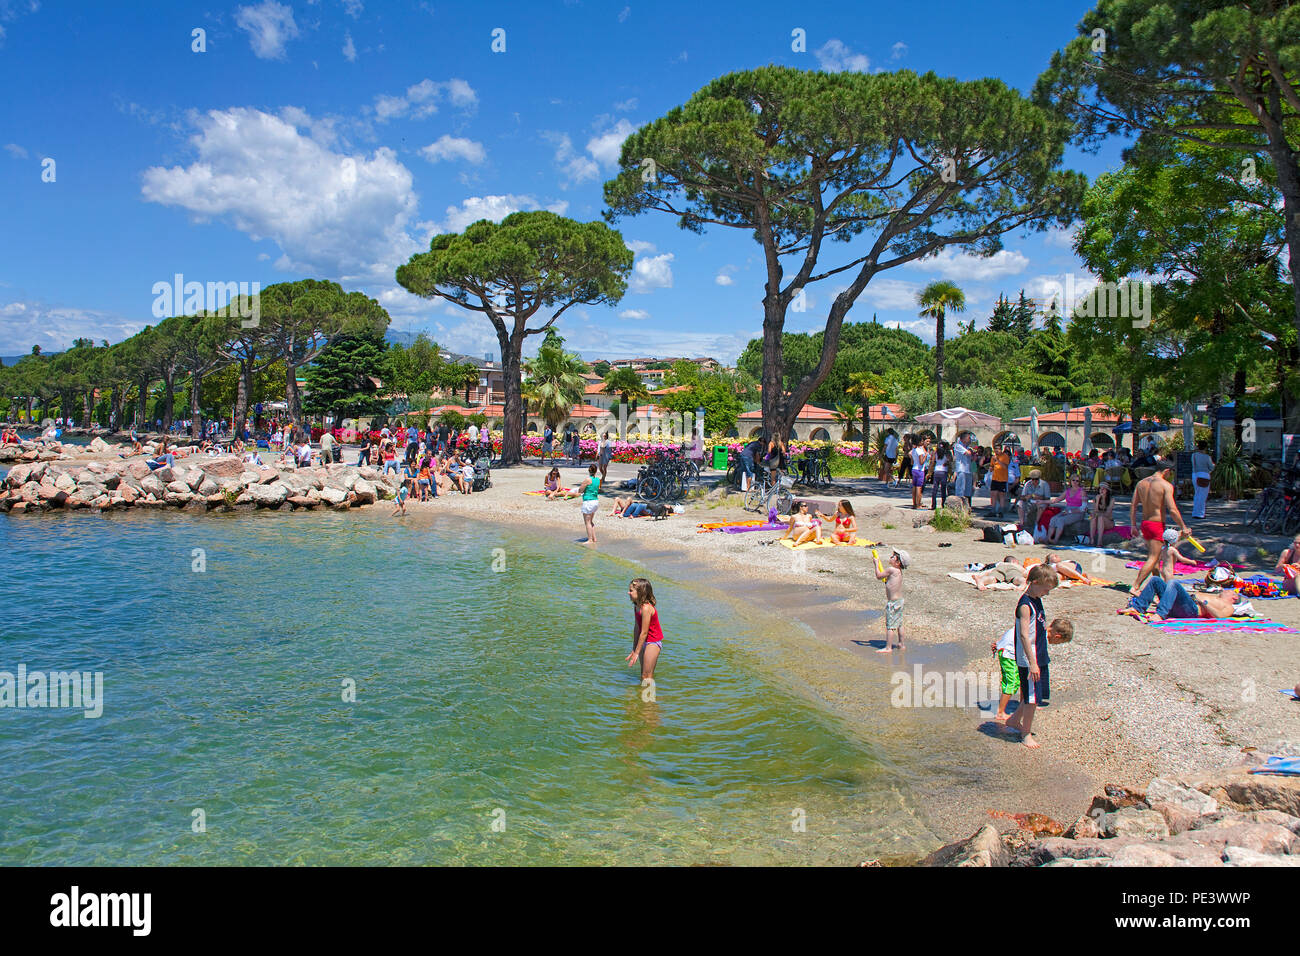 Menschen am Strand von Lazise, gardasee, Provinz Verona, Italien | Persone presso la spiaggia di Lazise, sul lago di Garda, provincia di Verona, Italia Foto Stock